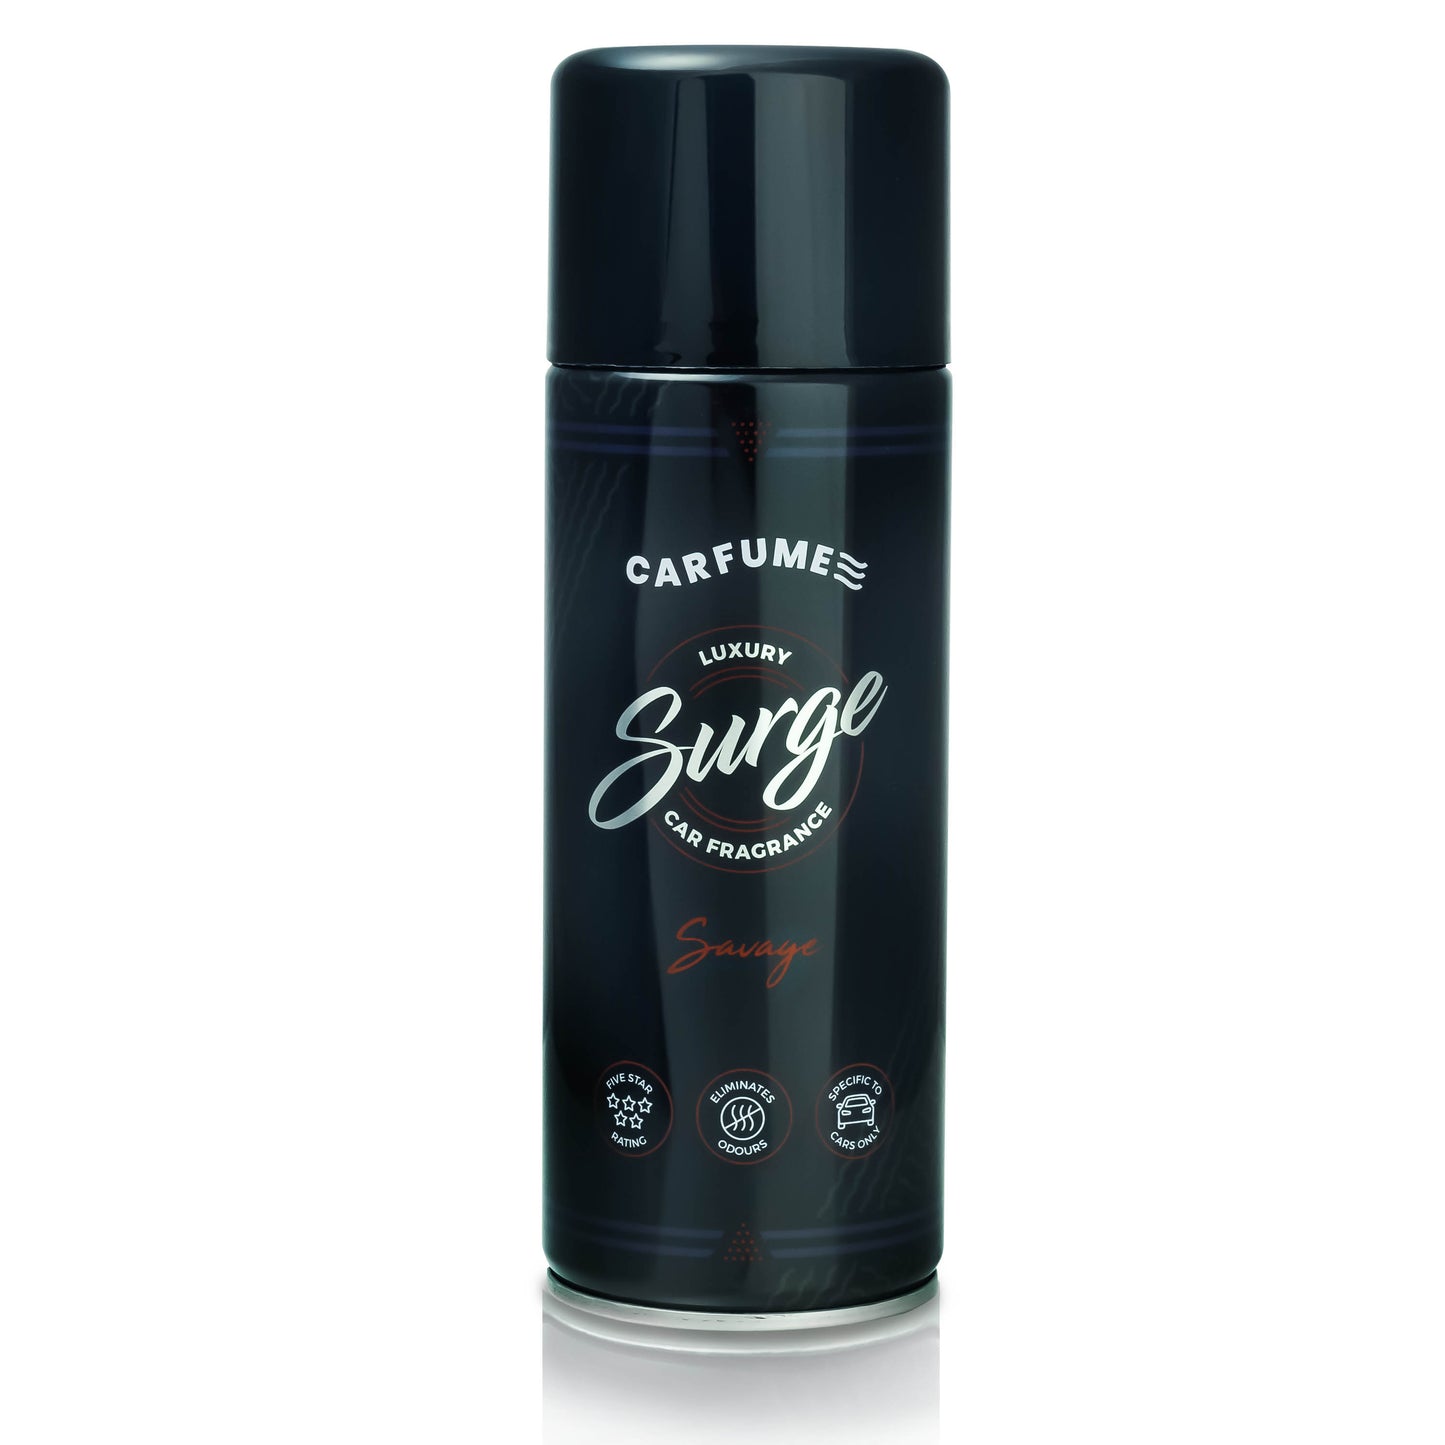 Savage Carfume "Surge"